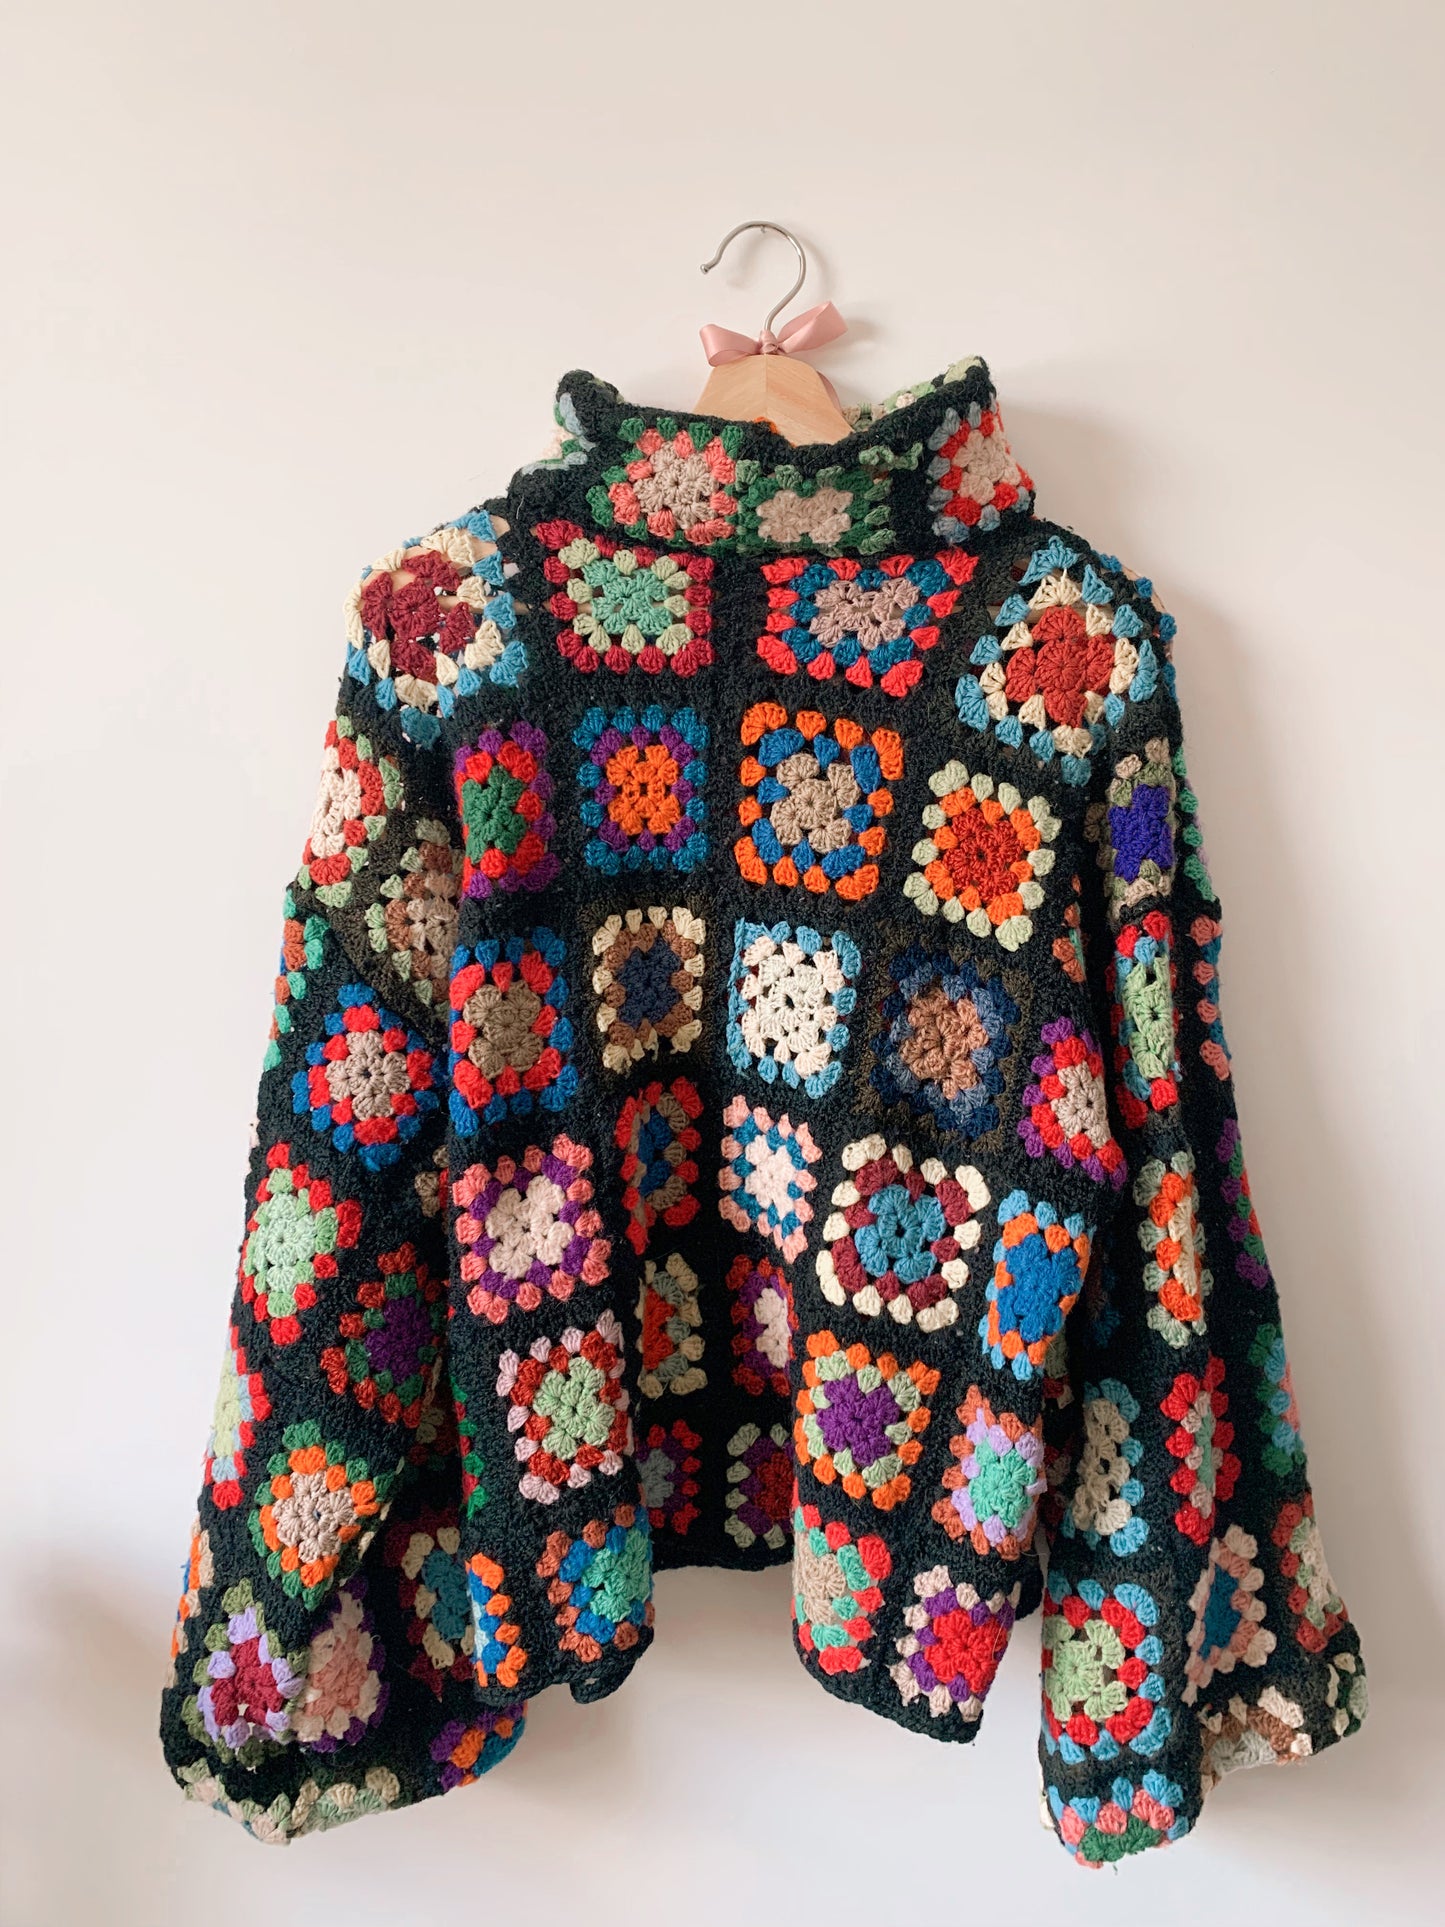 Granny squares sweater